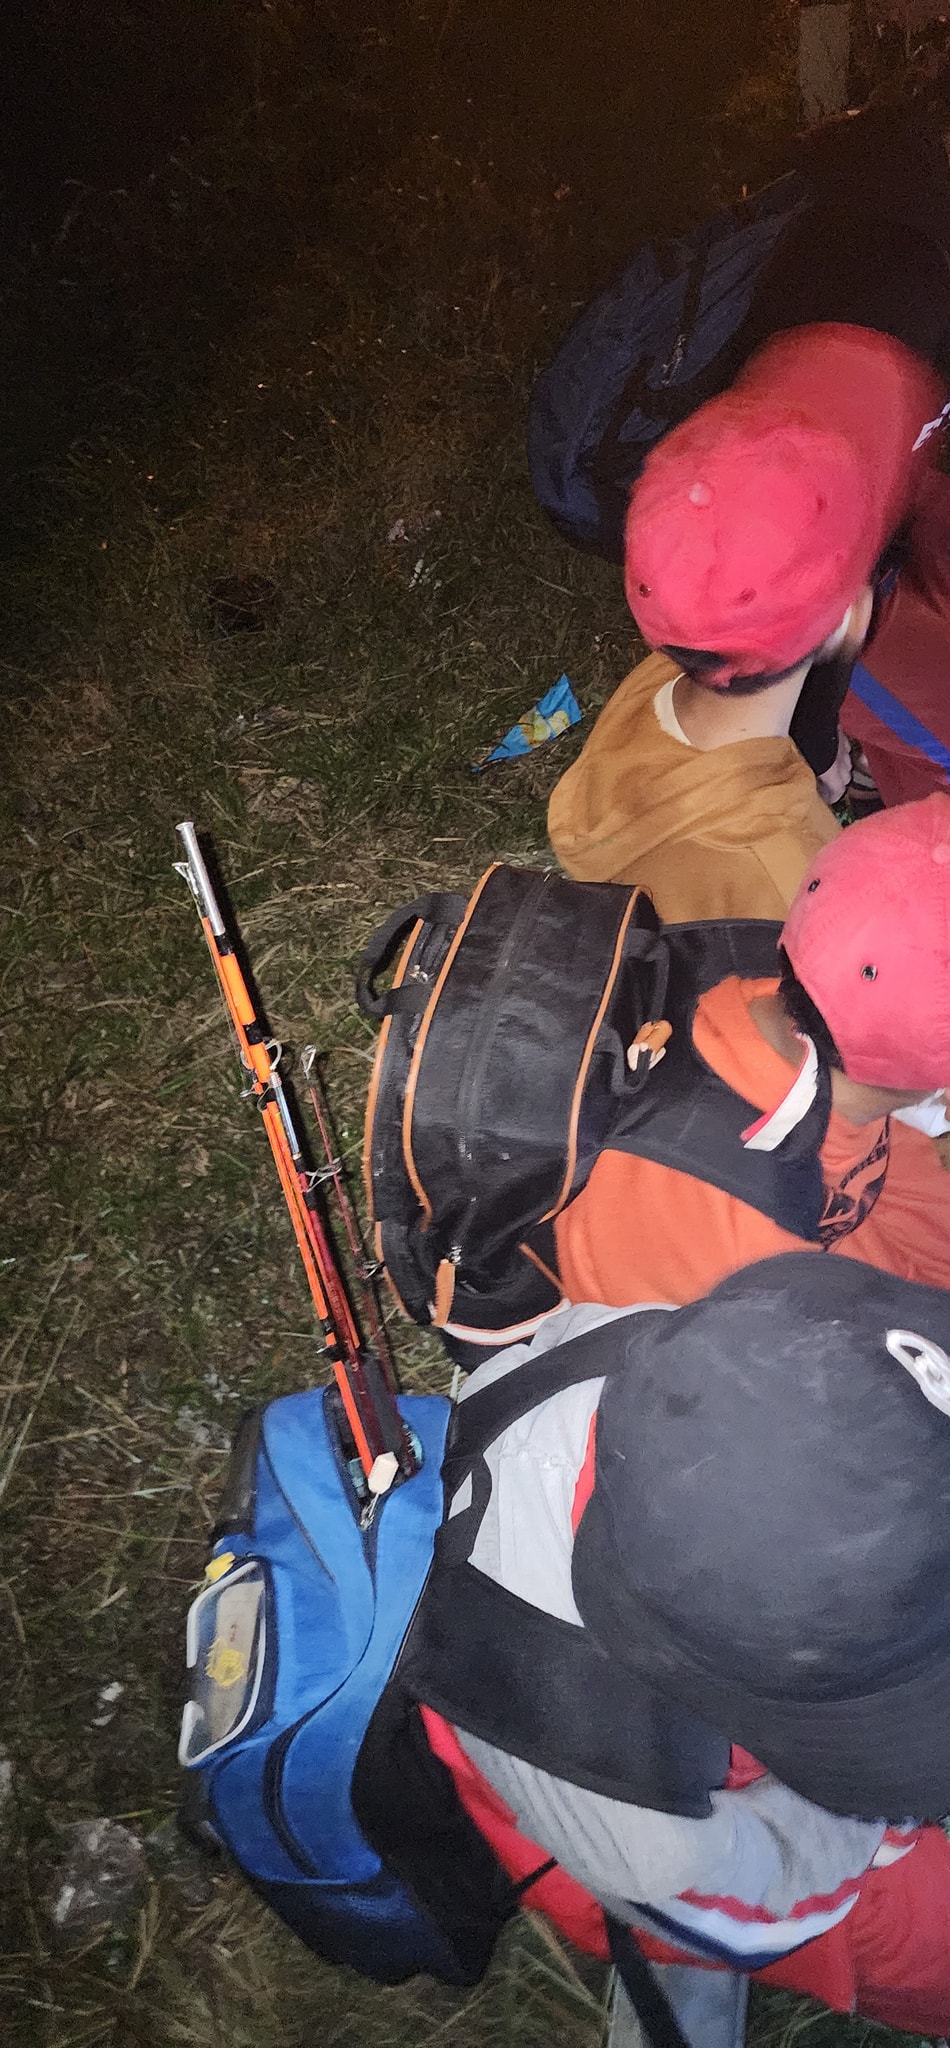 4 bé trai học lớp 5 ở Sóc Trăng dự định đạp xe hơn 200km tìm mẹ, mang theo cả cần để câu cá dọc đường - Ảnh 4.